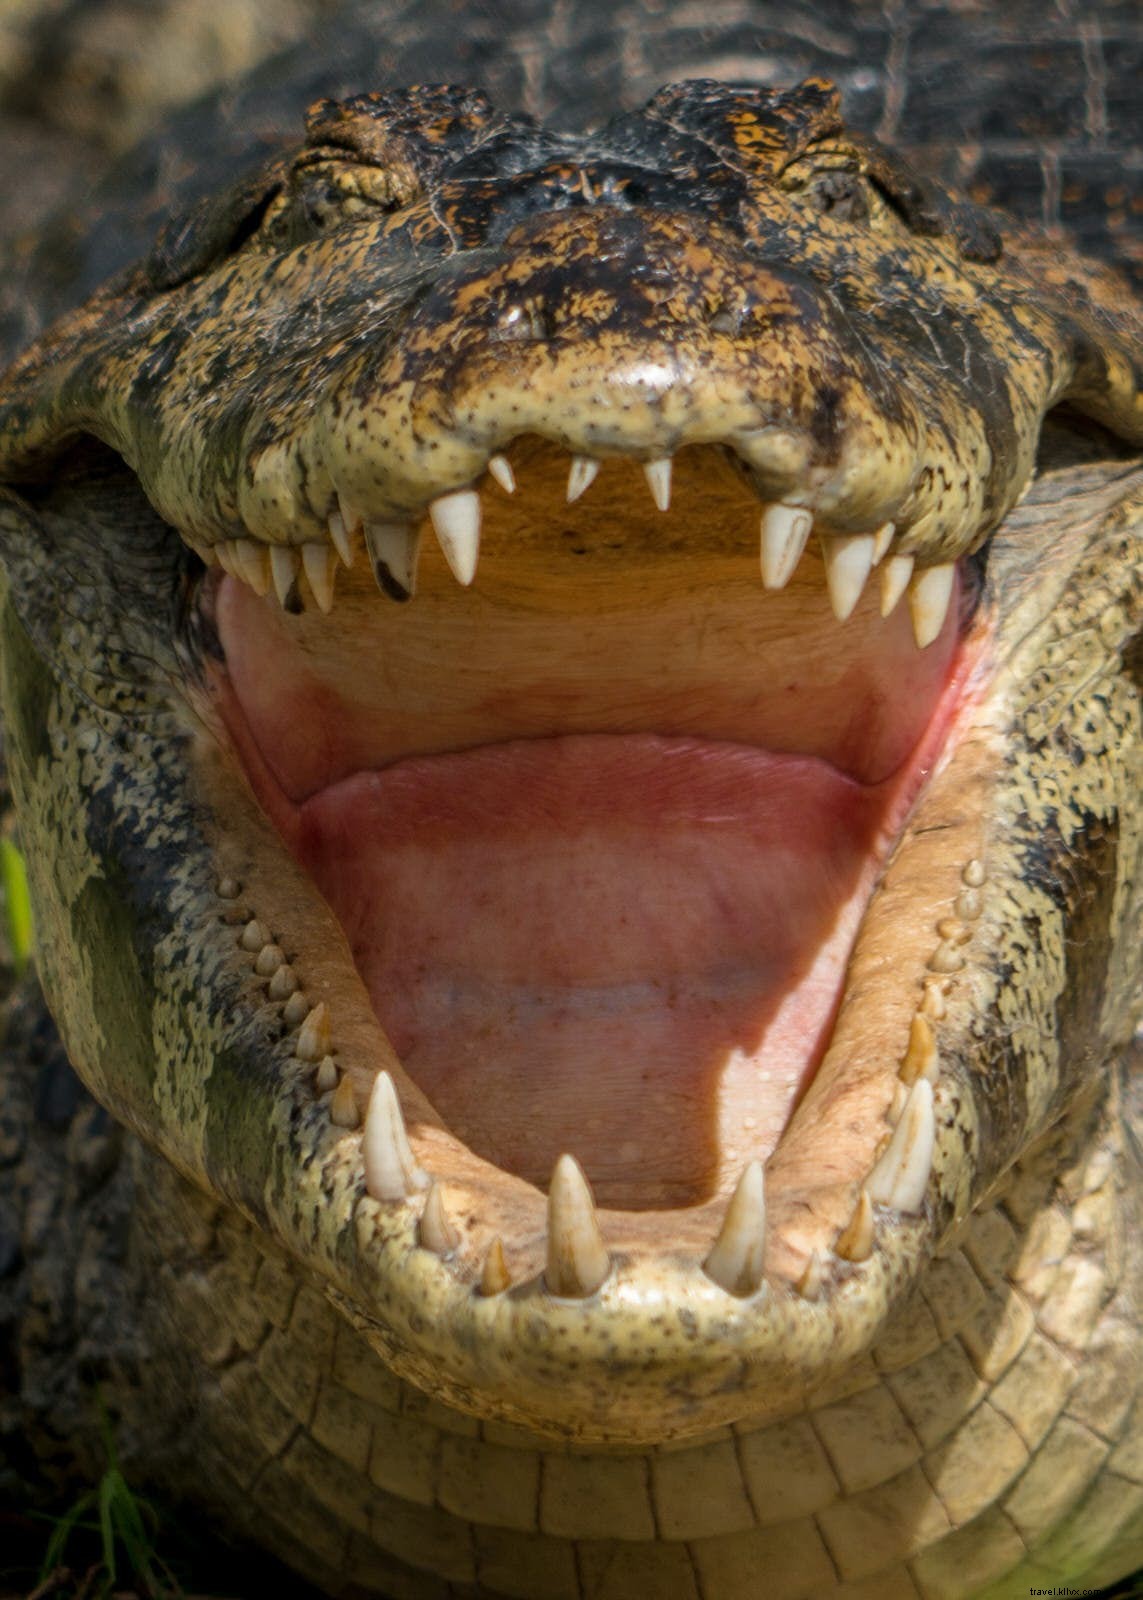 Il paese delle meraviglie della fauna selvatica:organizza il tuo viaggio nel Pantanal 